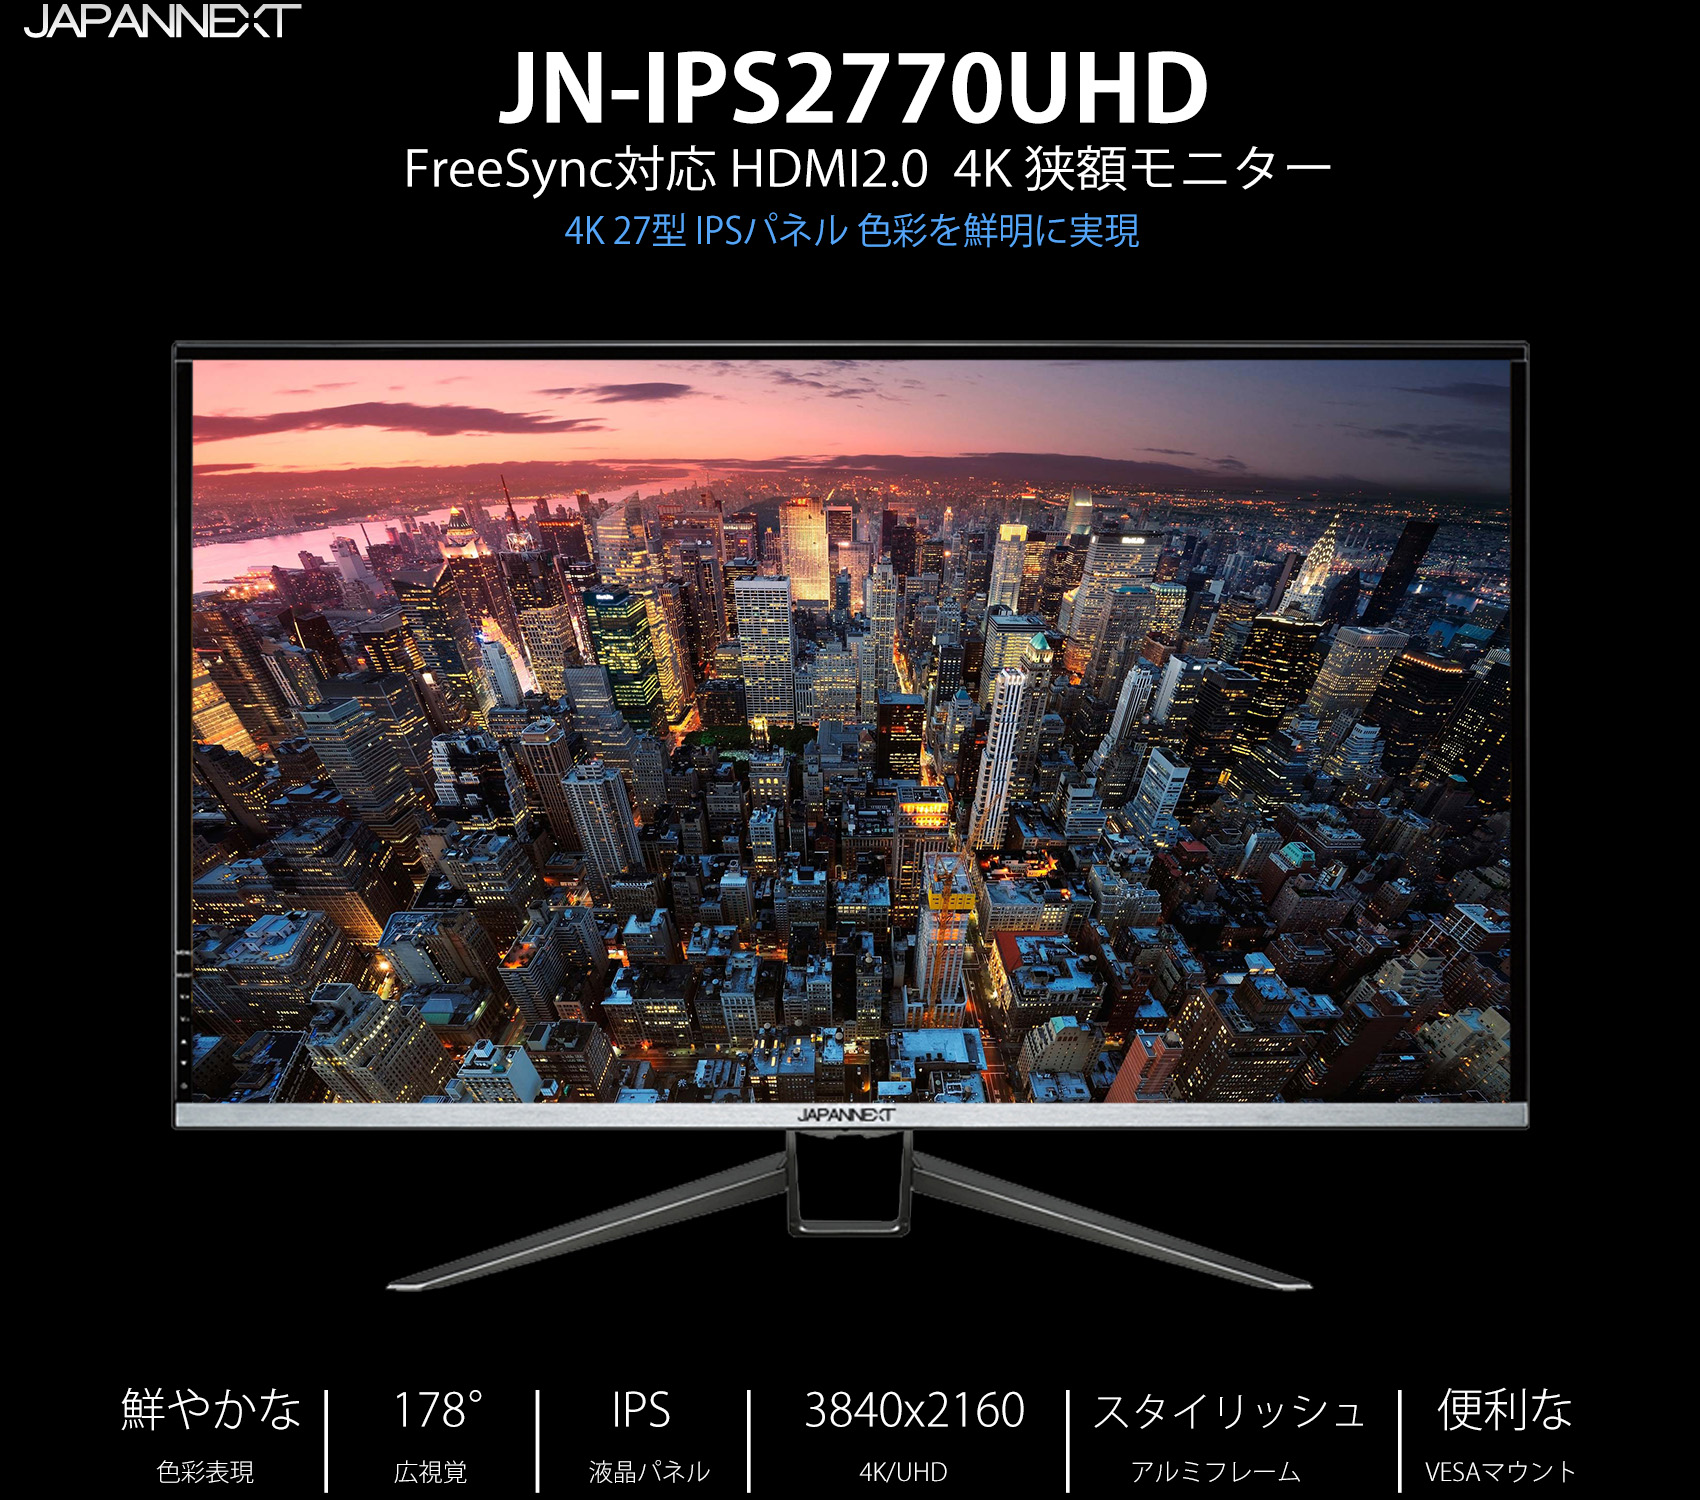 生産終了〉JAPANNEXT JN-IPS2770UHD 4K 27インチIPS液晶ディスプレイ